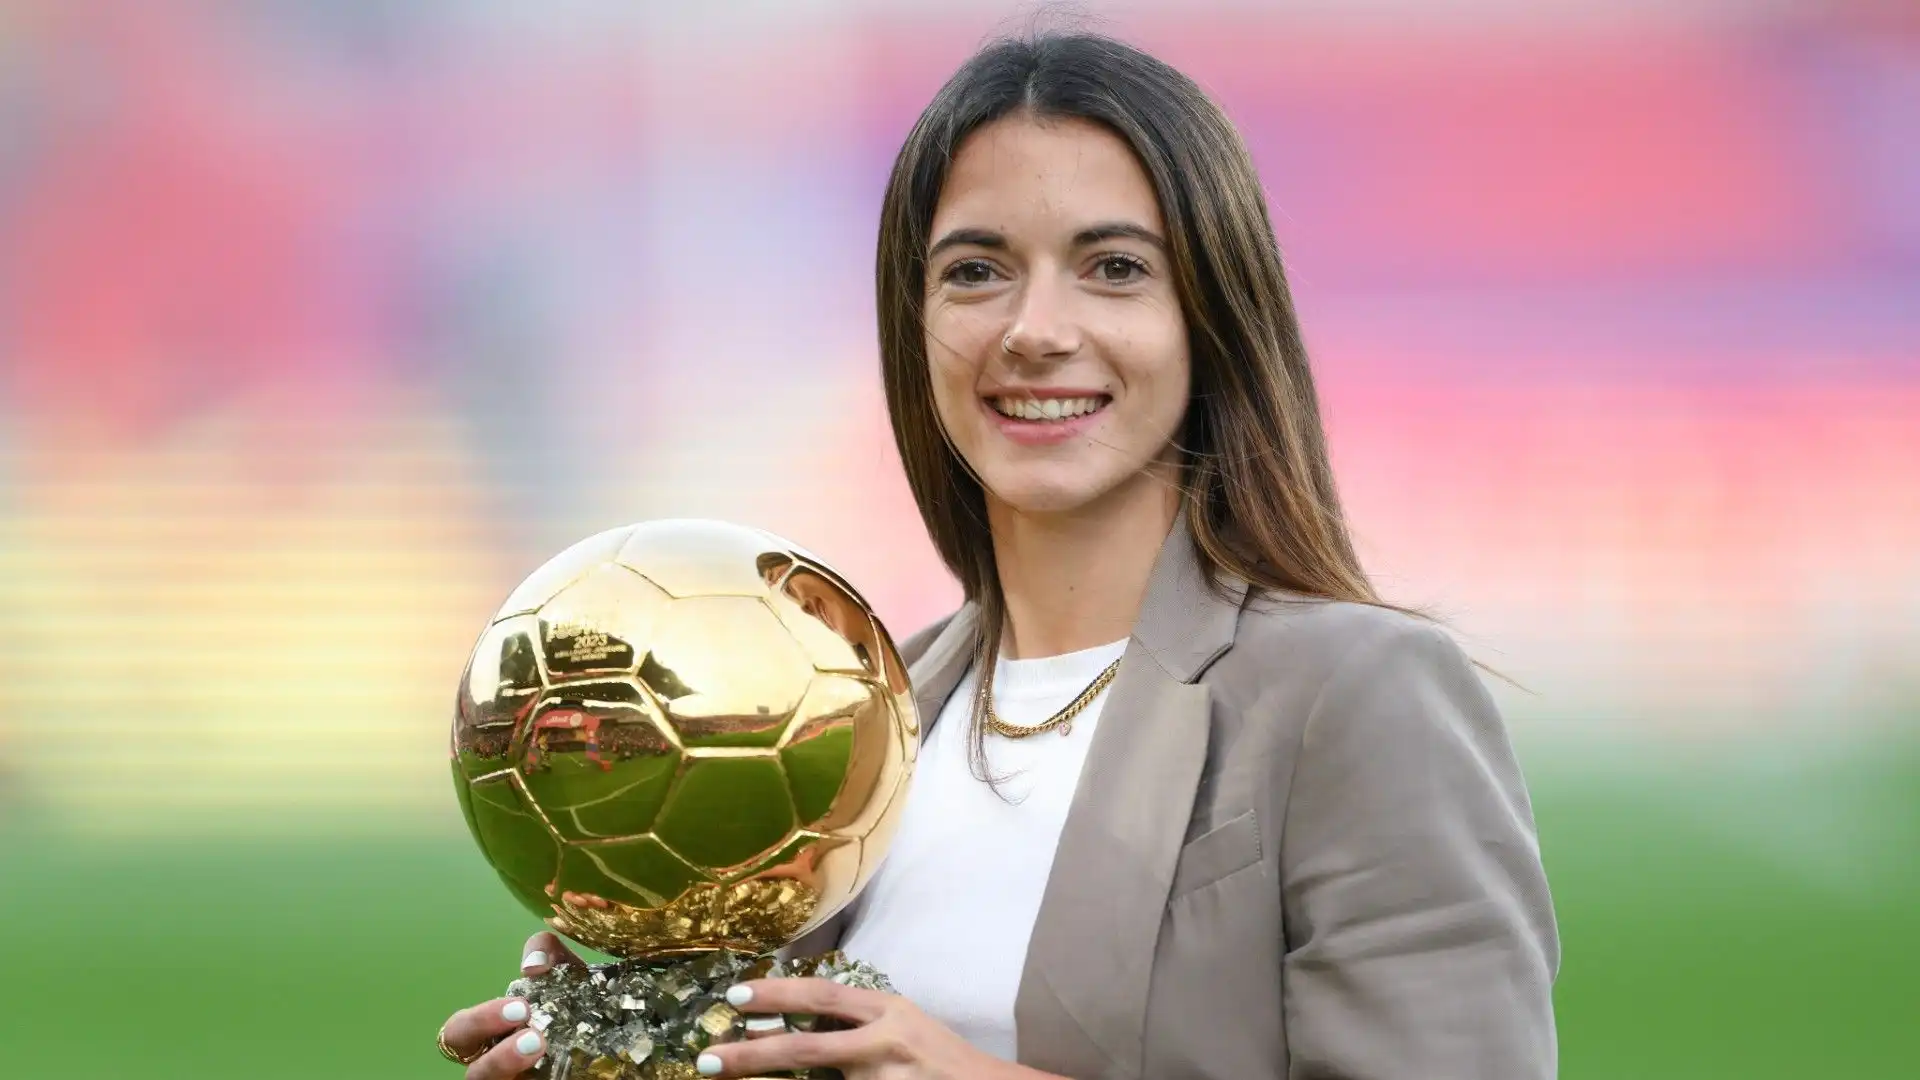 La stella più luminosa del calcio femminile: le foto di Aitana Bonmatí